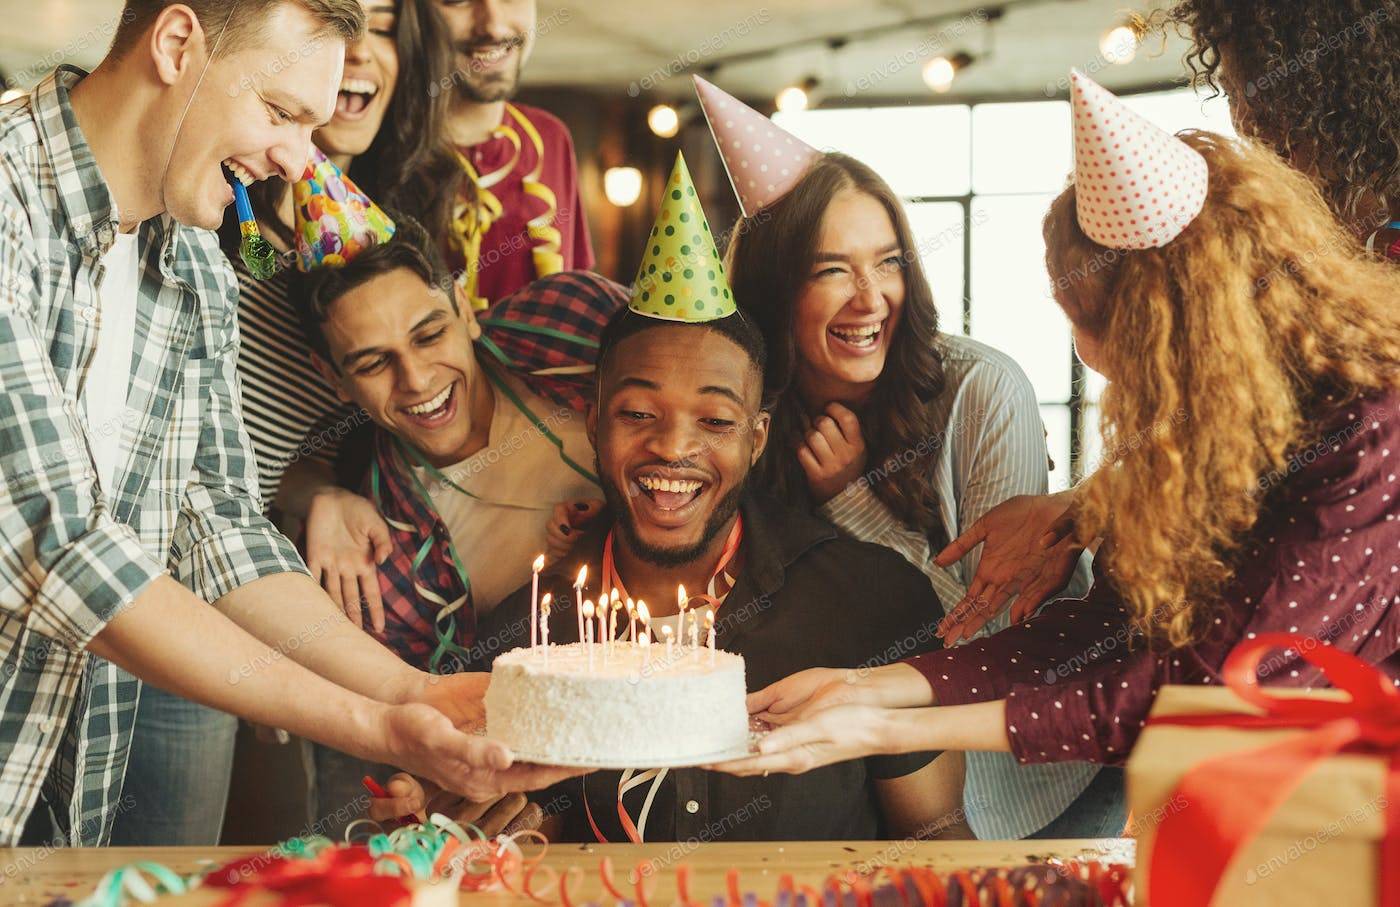 Сюрприз для любимого на день рождения: идеи и как сделать самостоятельно